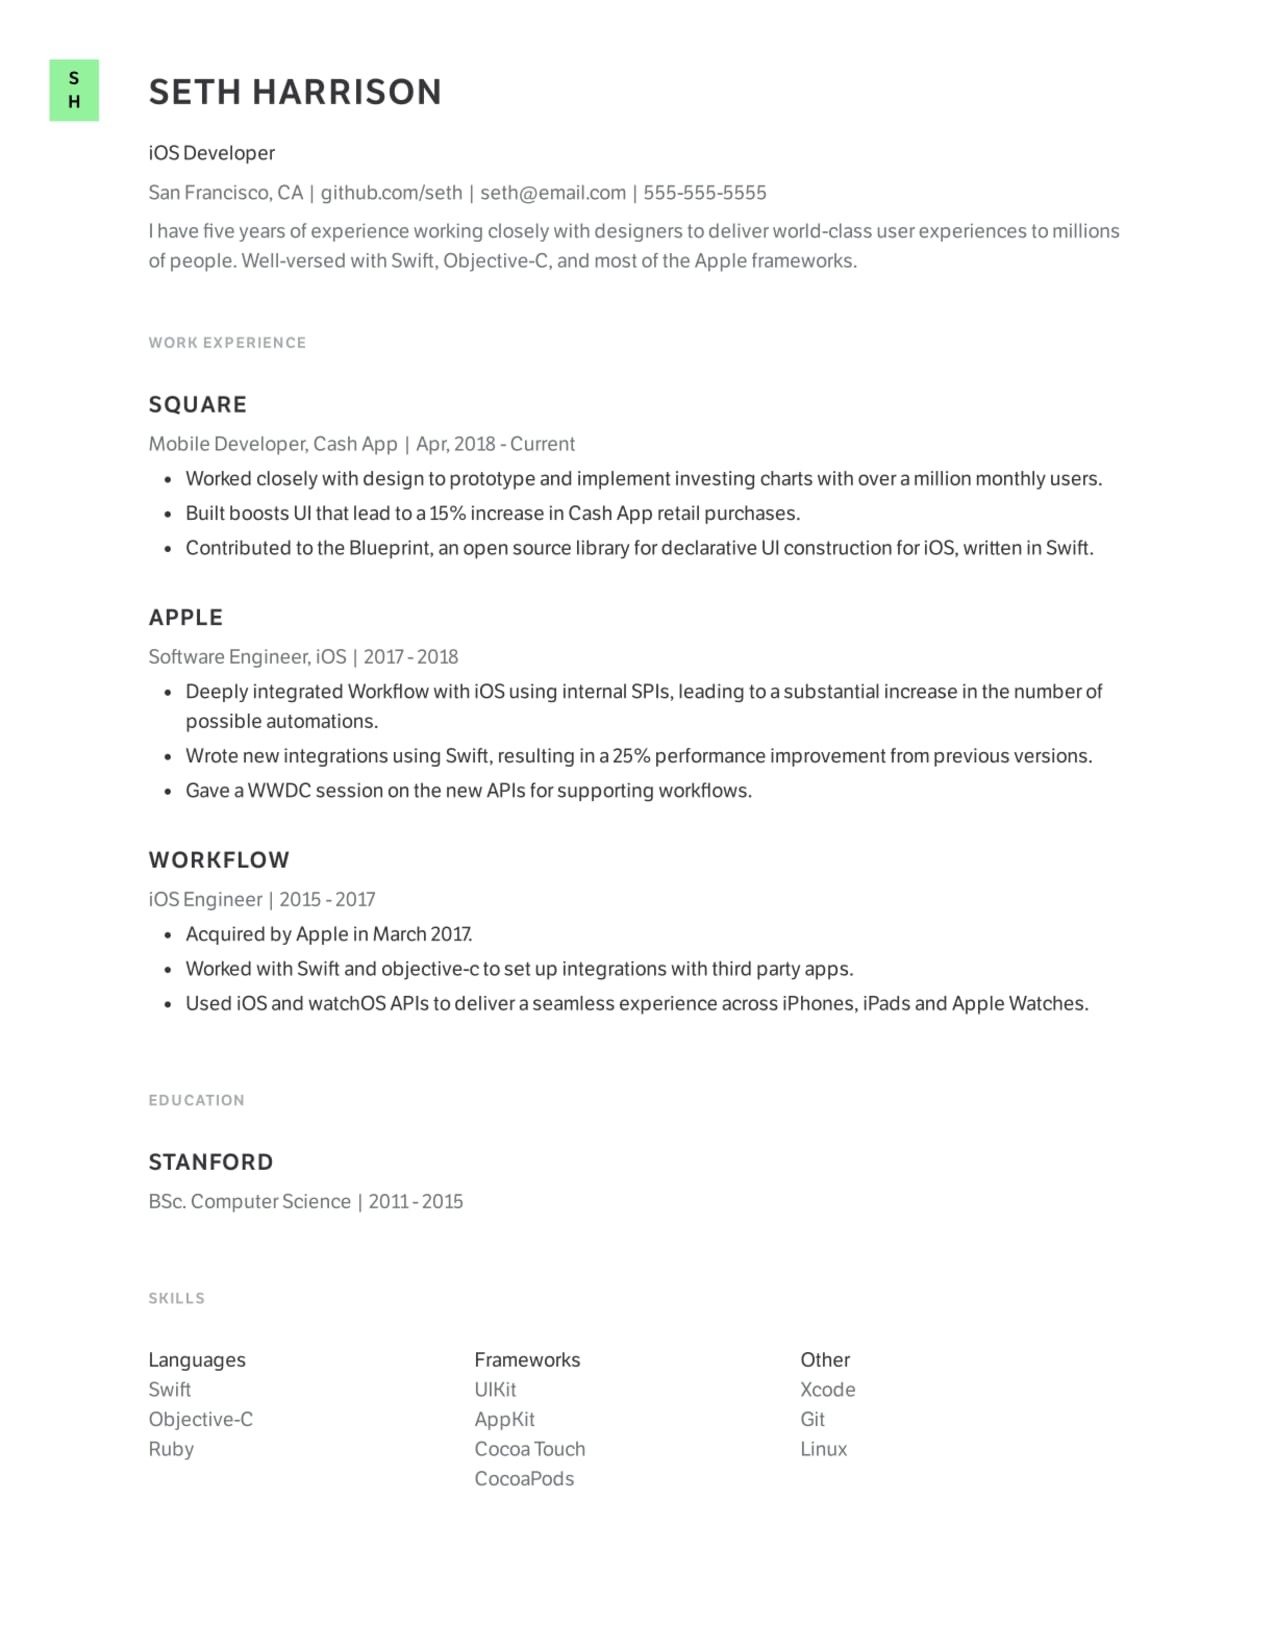 Basic iOS Developer resume sample.